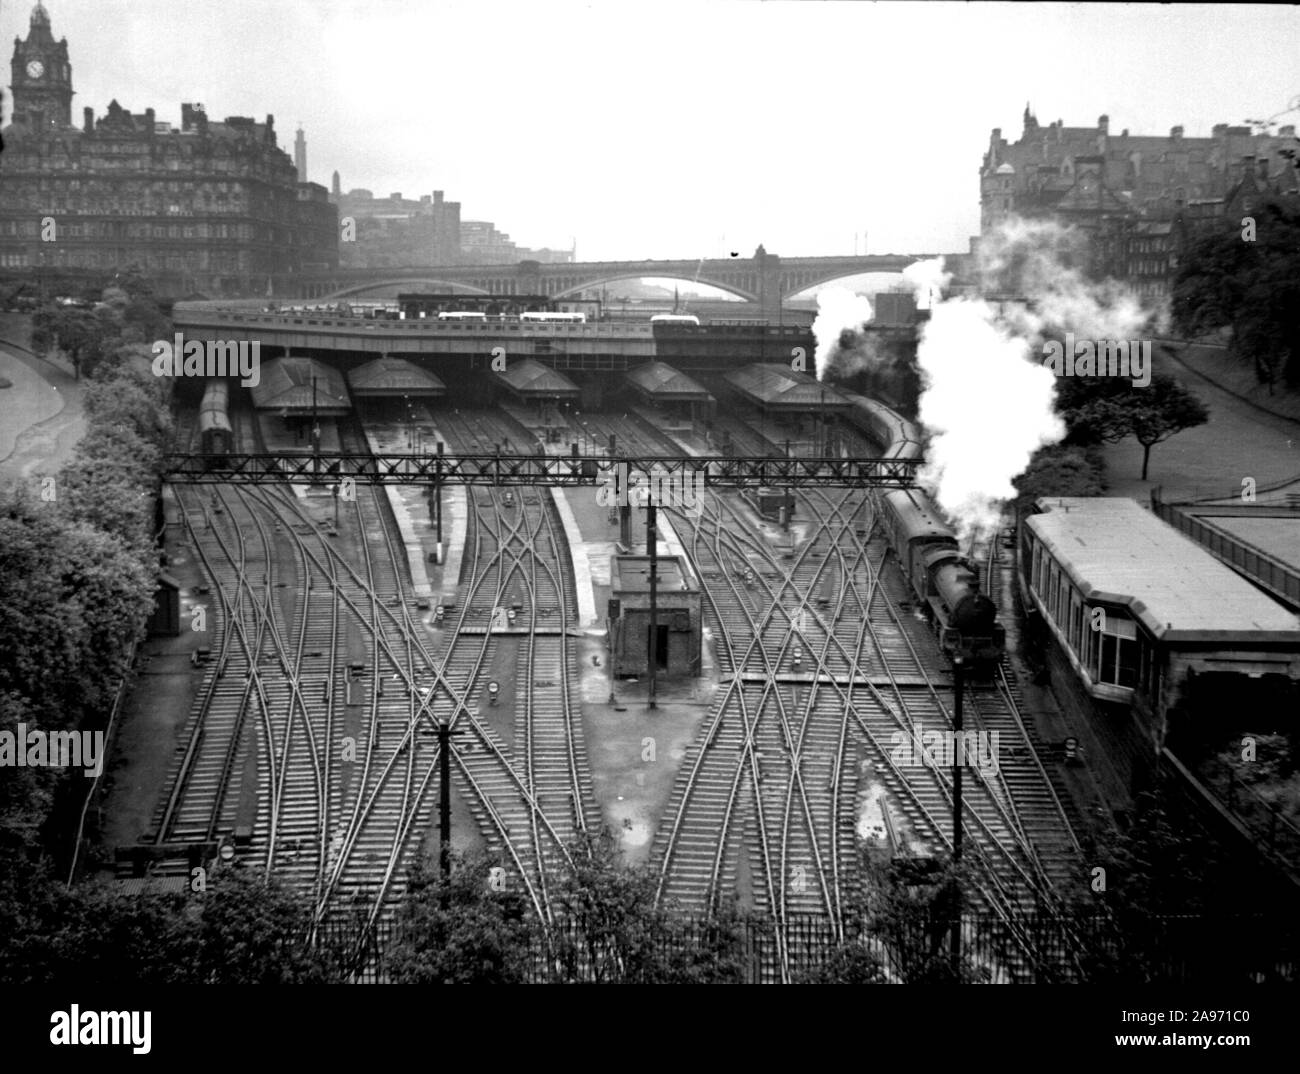 Un train à vapeur quitte la gare d'Édimbourg dans les années 1940. Vue en grand angle montrant toutes les lignes de chemin de fer et l'hôtel North British Station au loin Banque D'Images